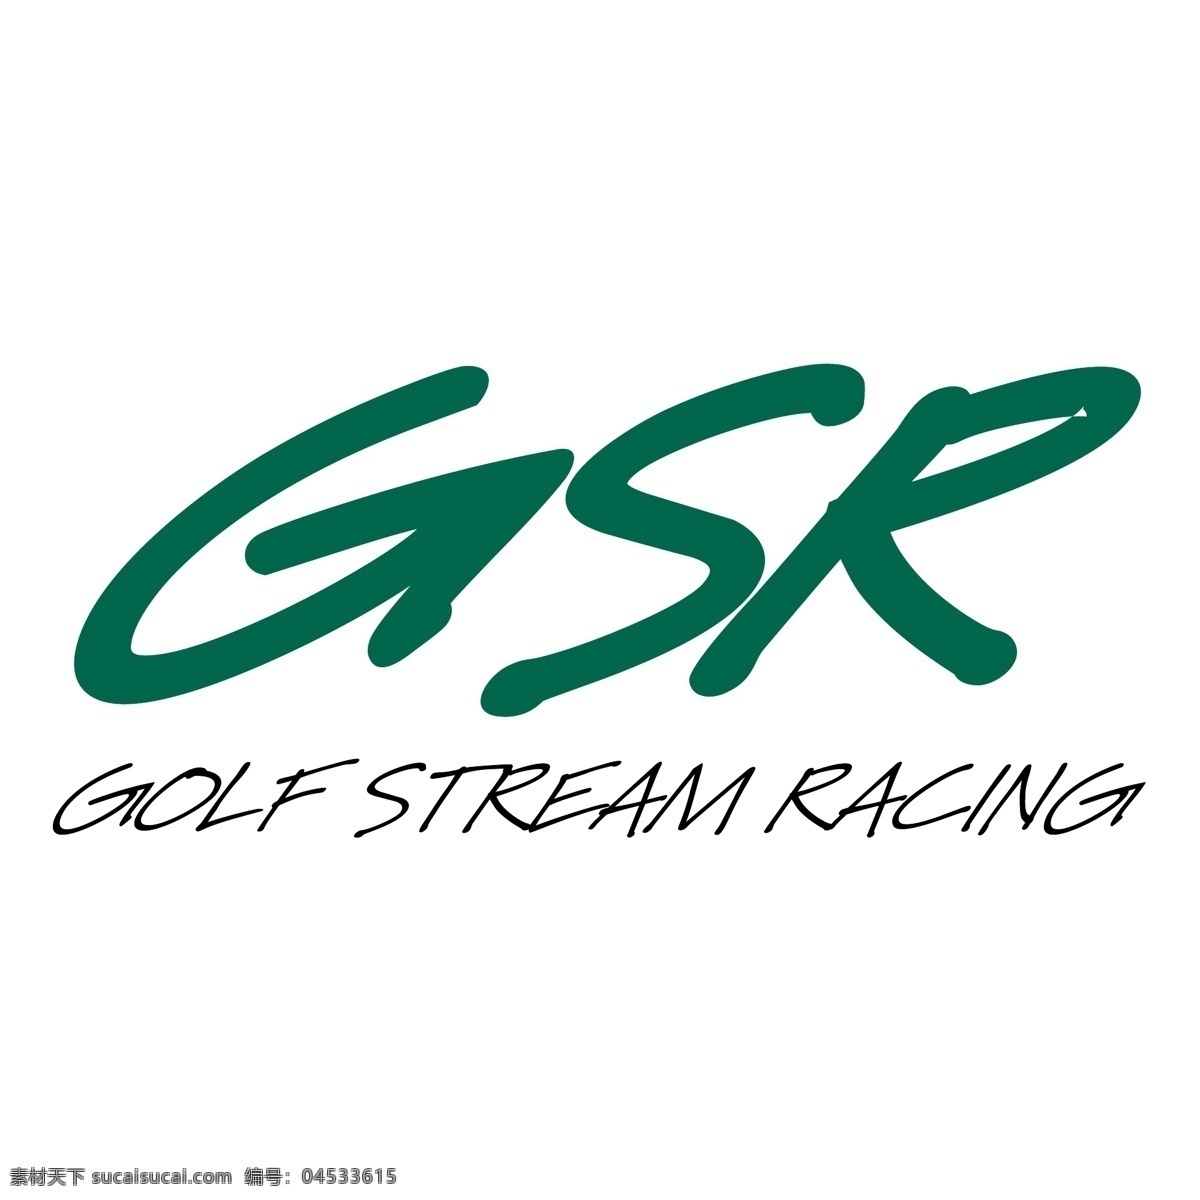 gsr 高尔夫 流 赛车 免费 标识 psd源文件 logo设计